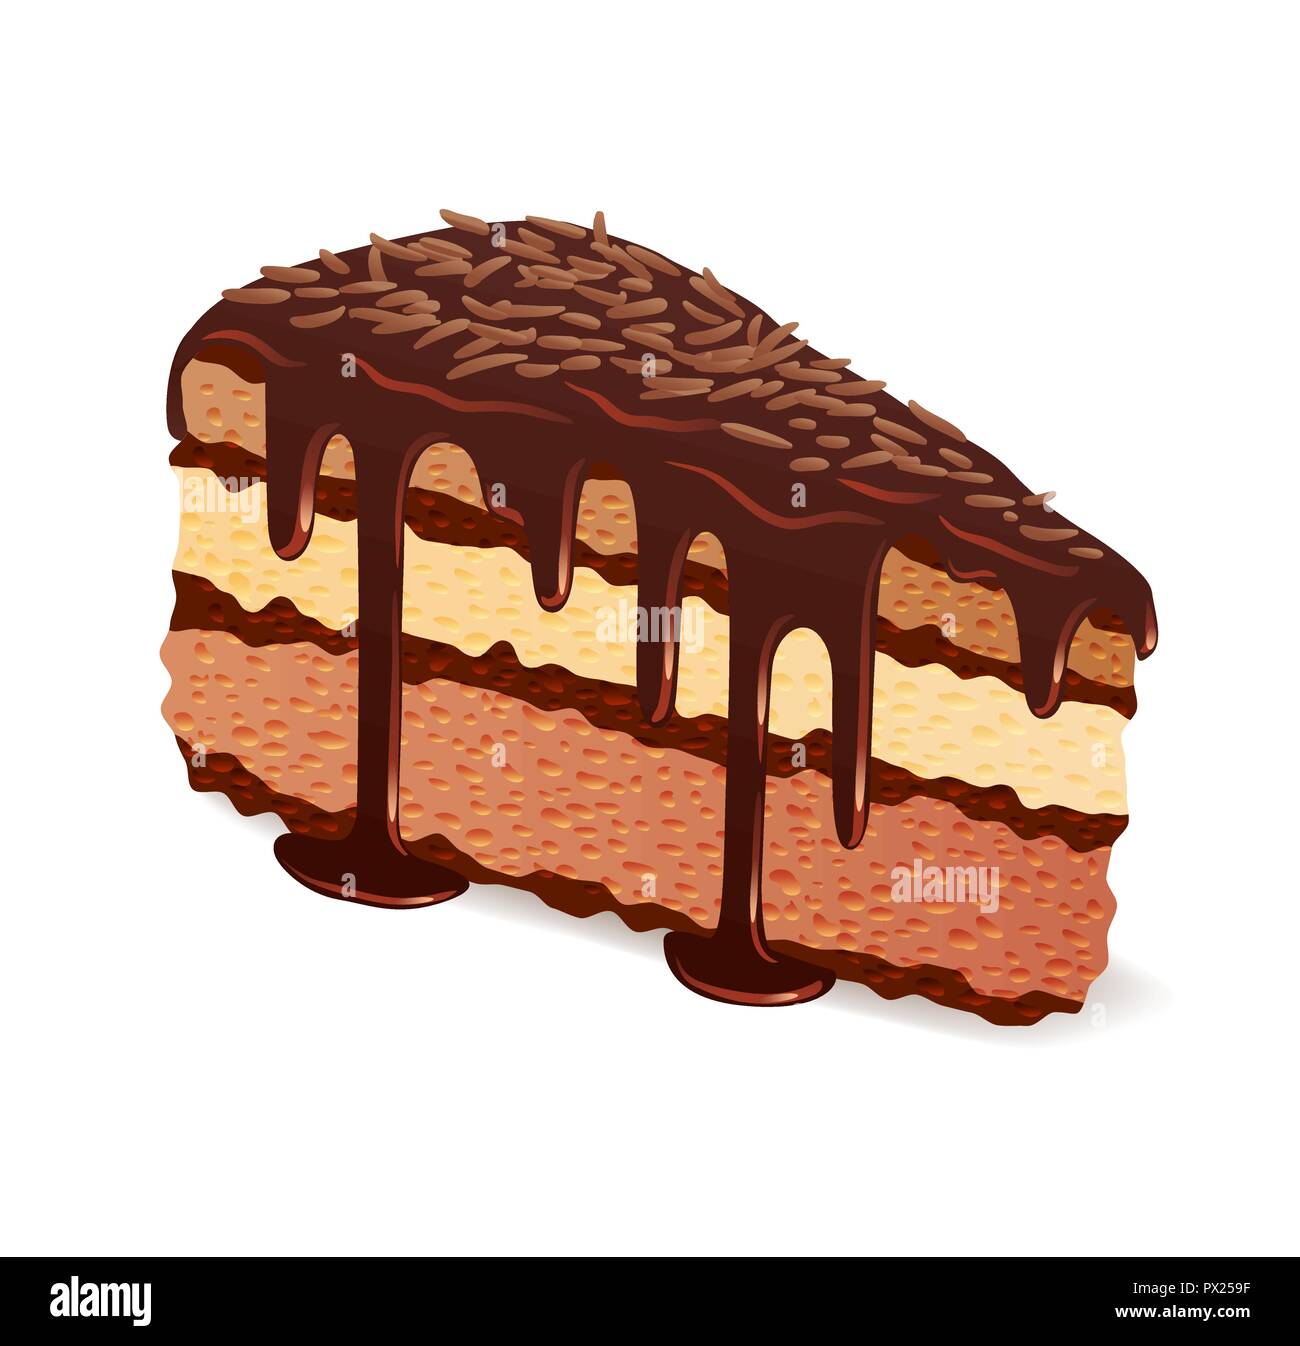 Pezzo di torta al cioccolato con smalto e topping Illustrazione Vettoriale